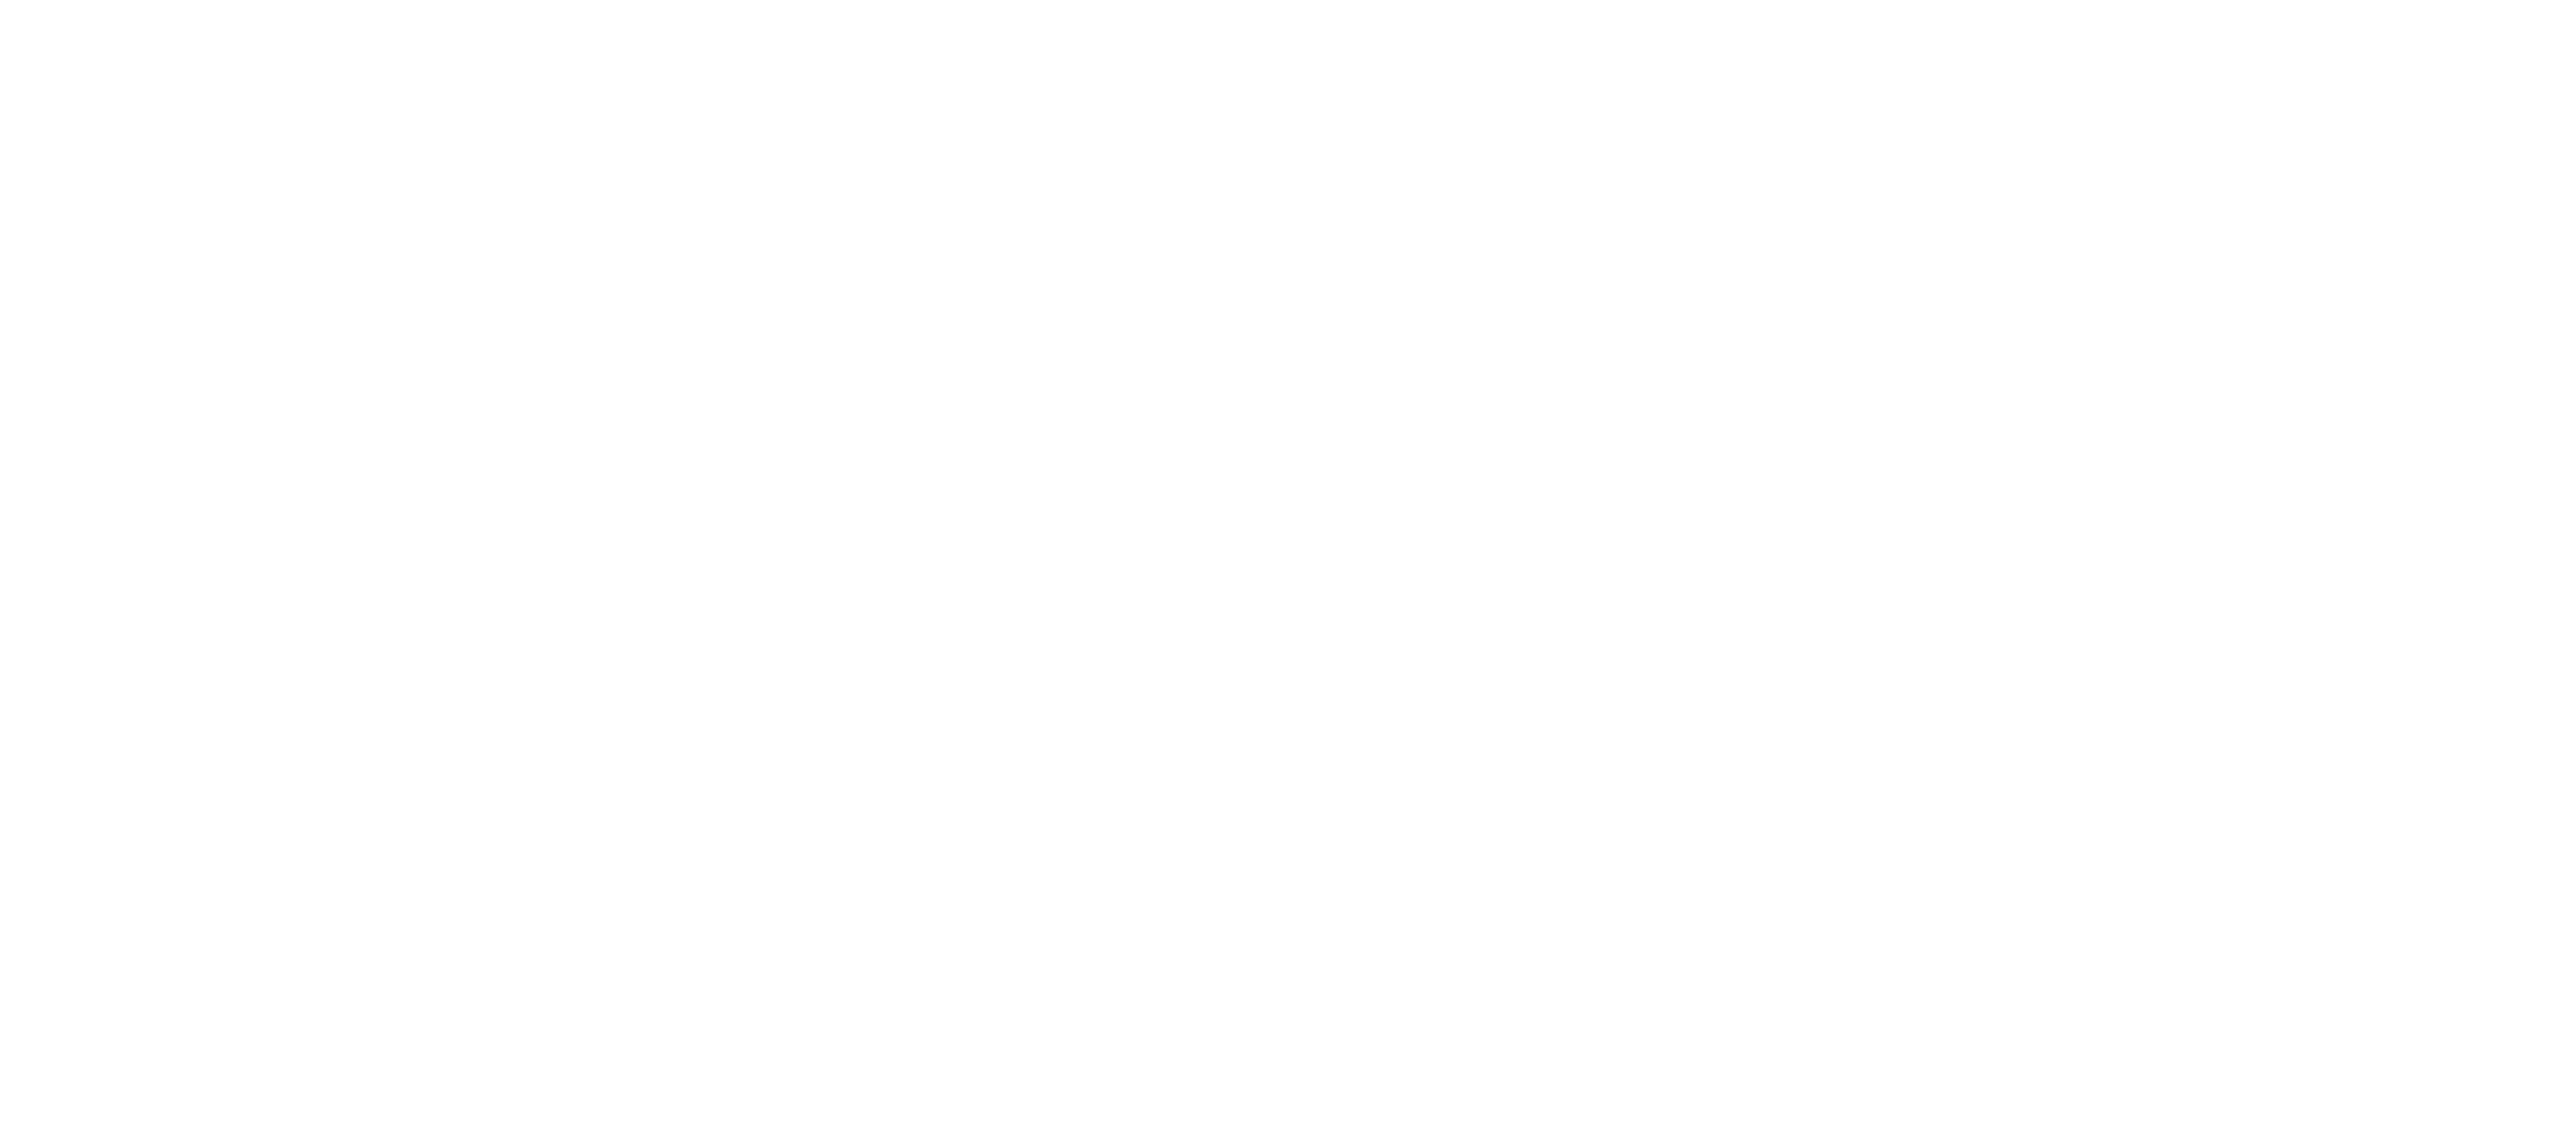 Agronomes & Vétérinaires Sans Frontières